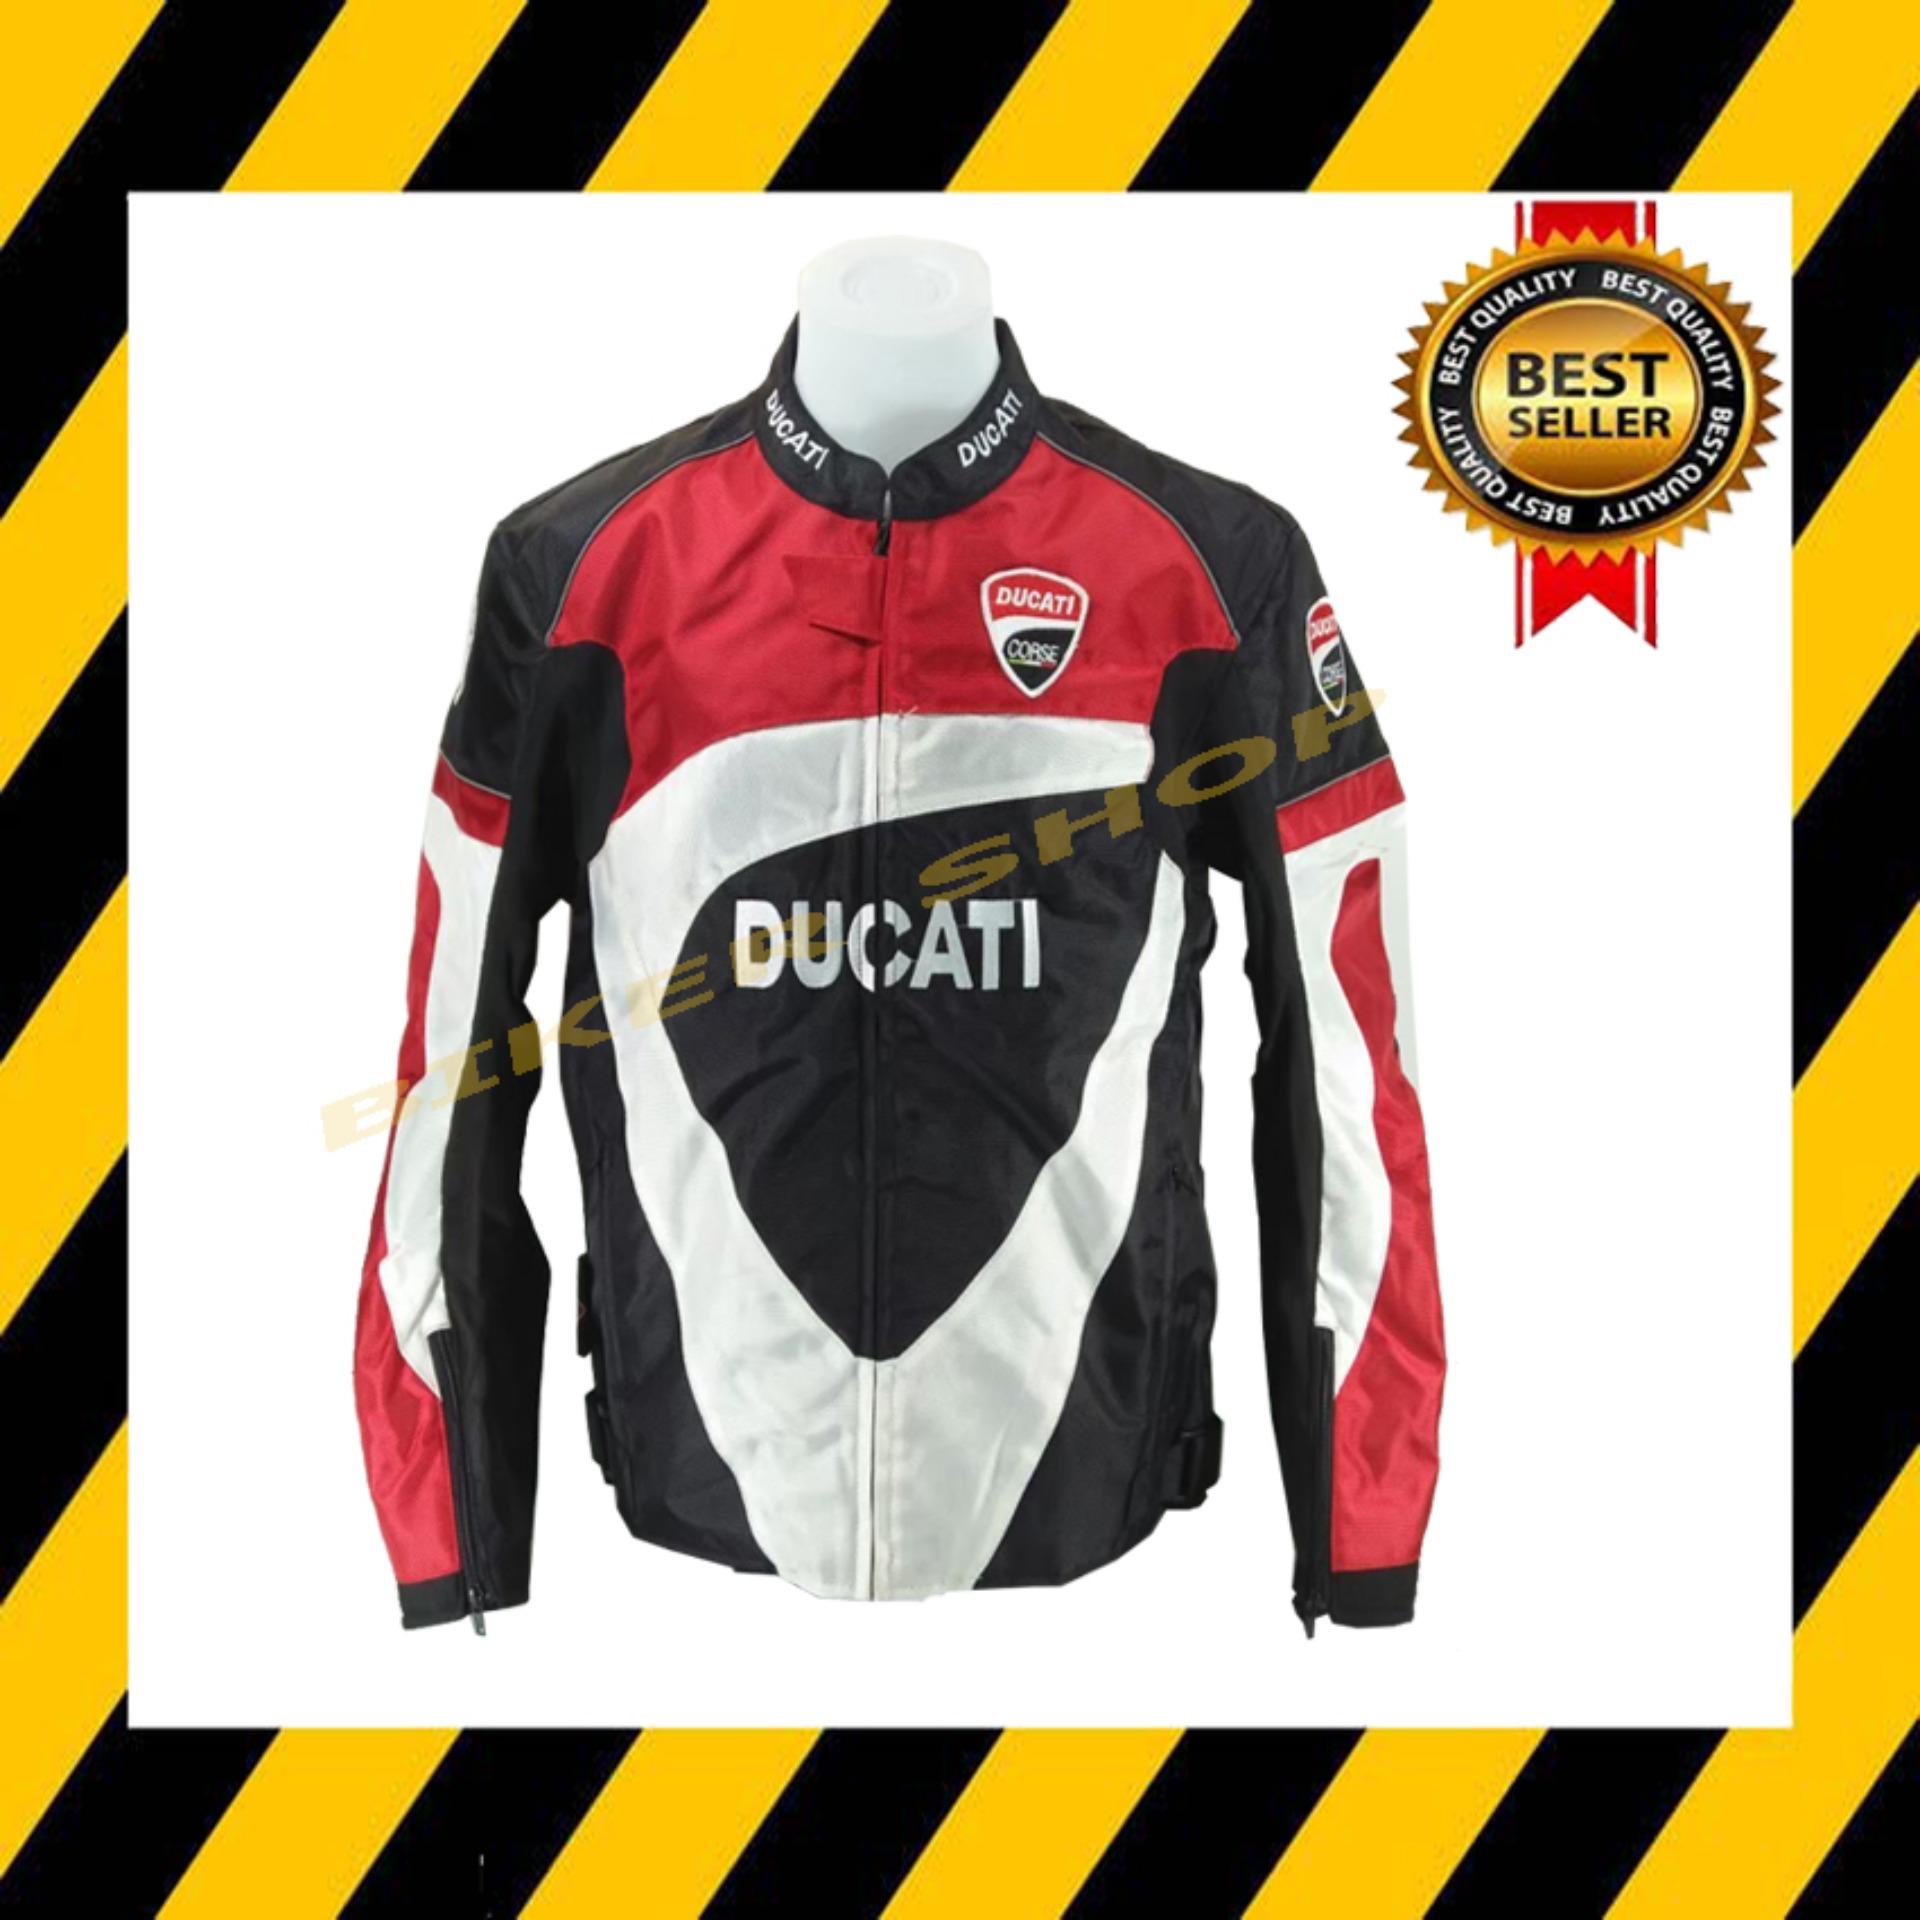 เสื้อการ์ด Ducati แดงดำขาว ผลิตจากผ้าแมส ระบายอากาศใส่สบาย ไม่ทำให้เสื้อมีกลิ่นอับชื่น (สินค้าในประเทศ ได้รับแน่นอน 1-3 วัน)